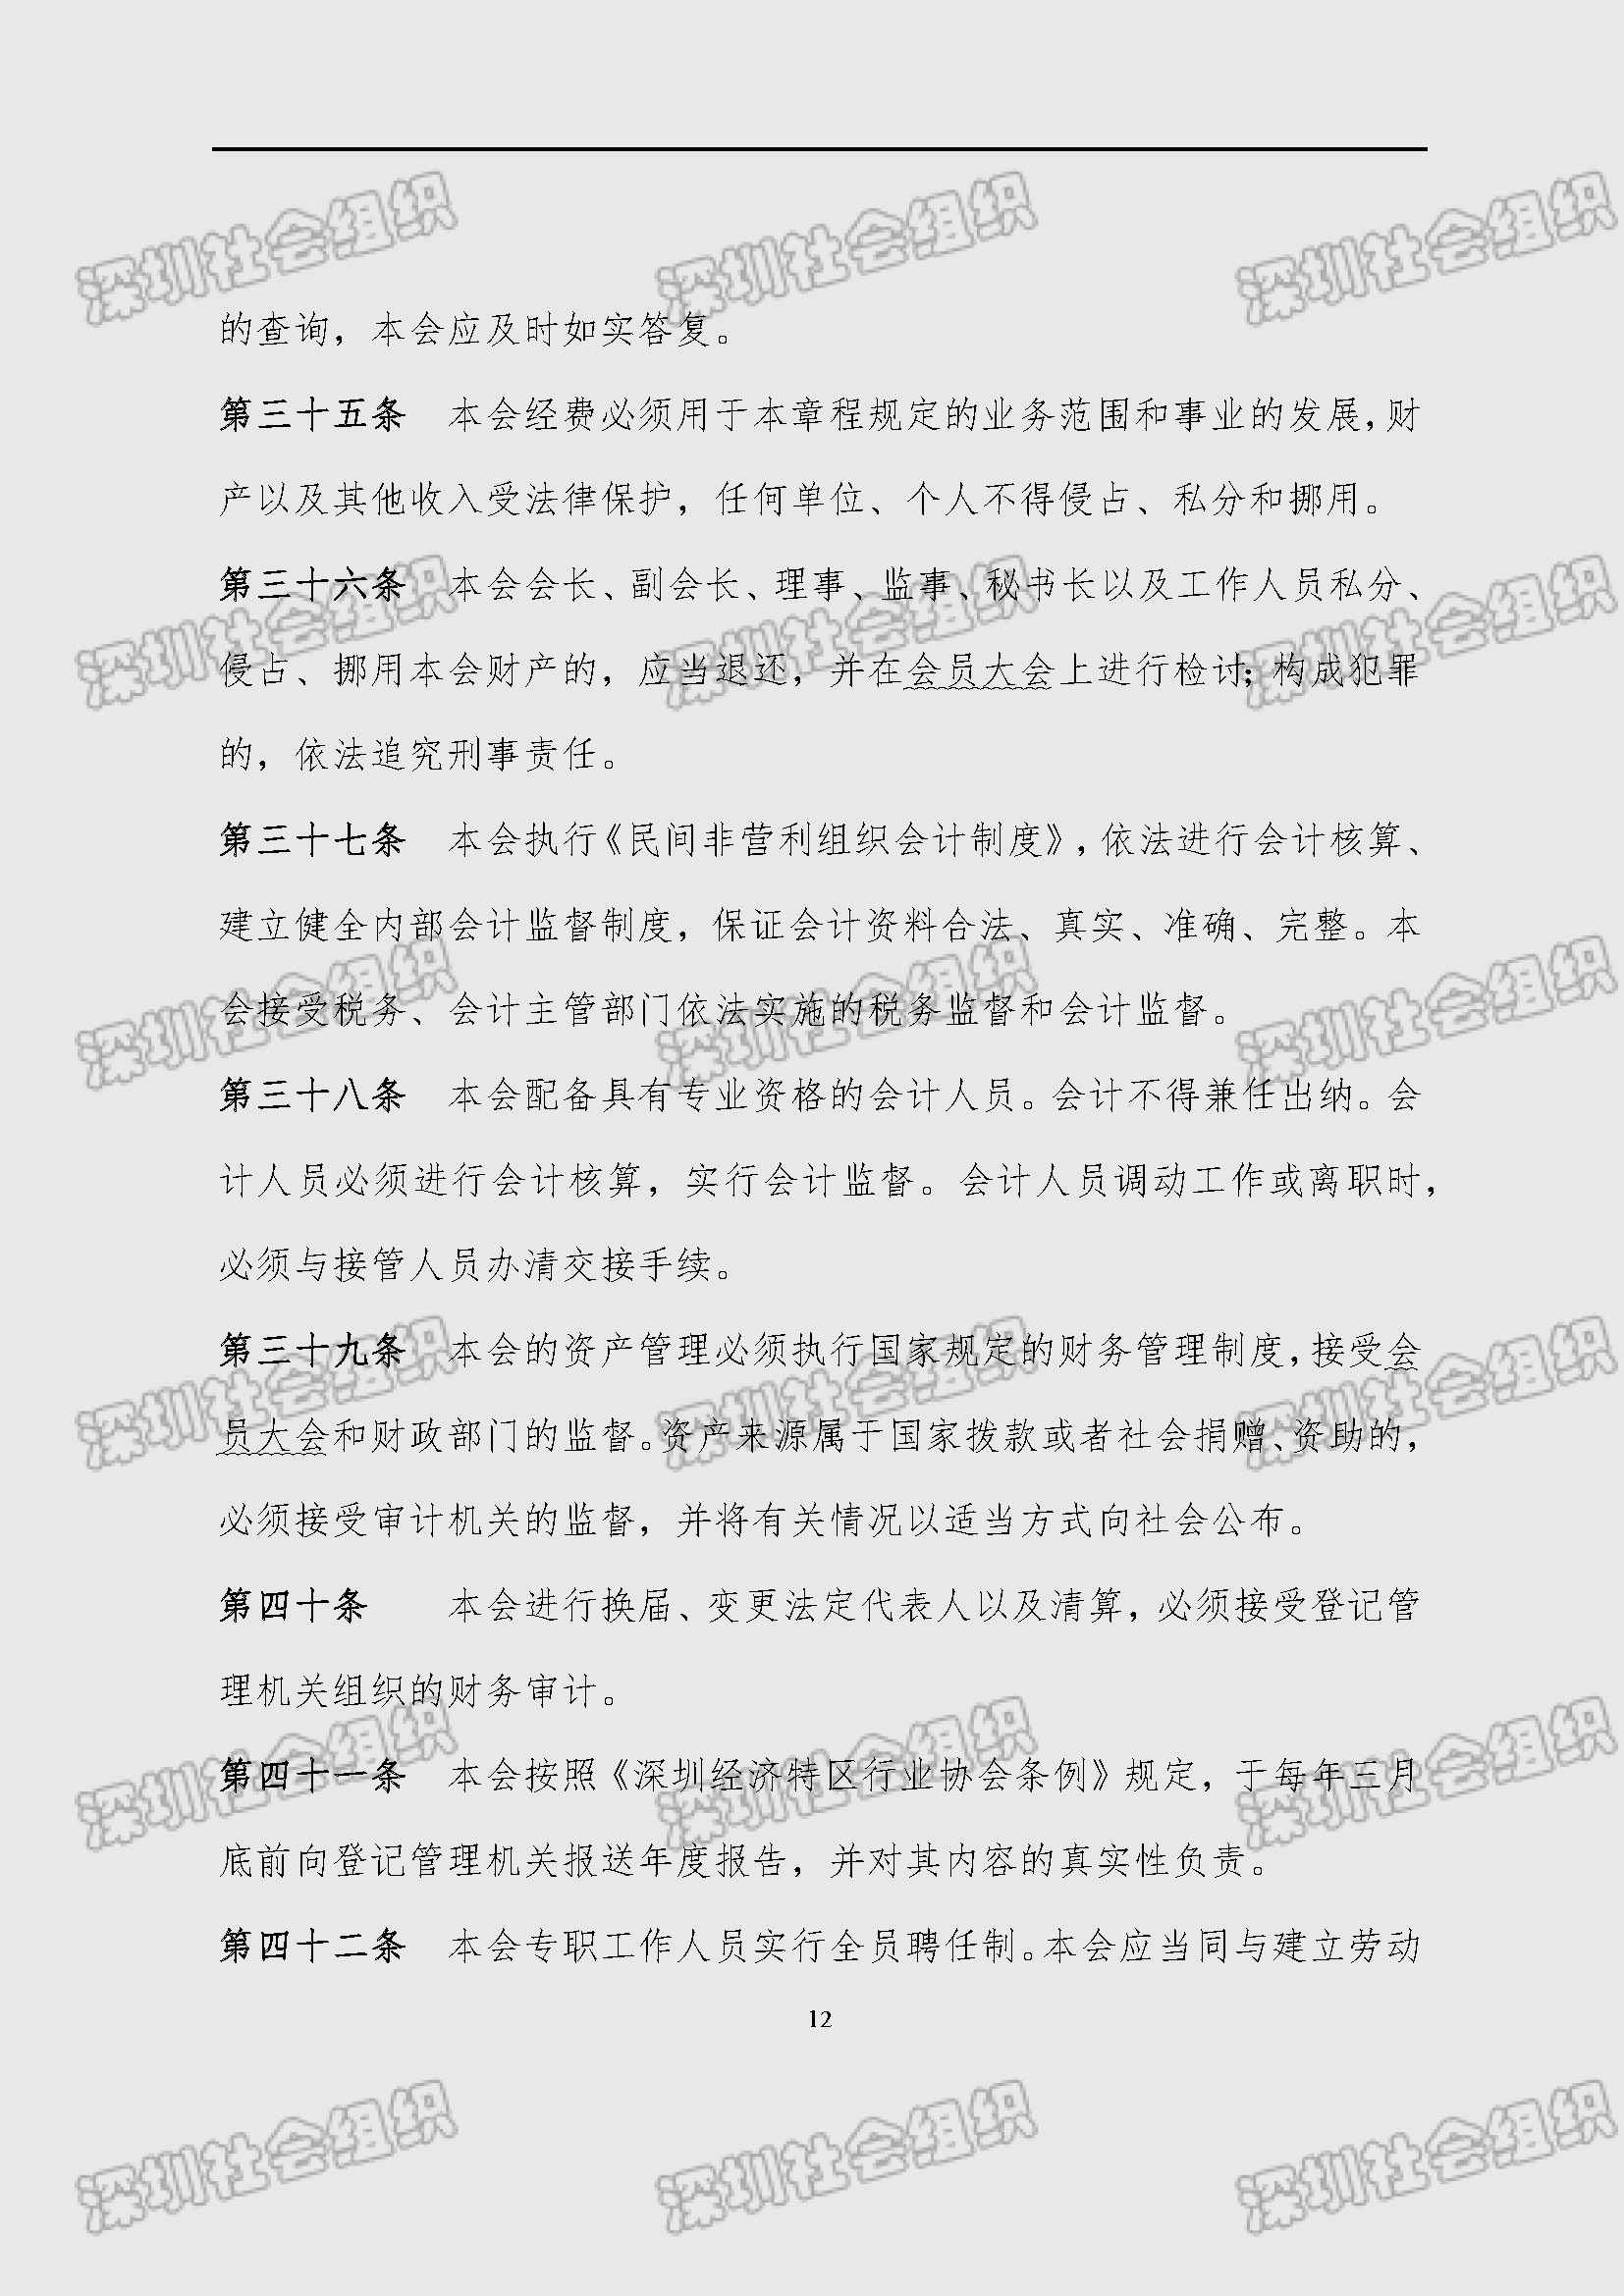 深圳市新材料行业协会章程_页面_12.jpg